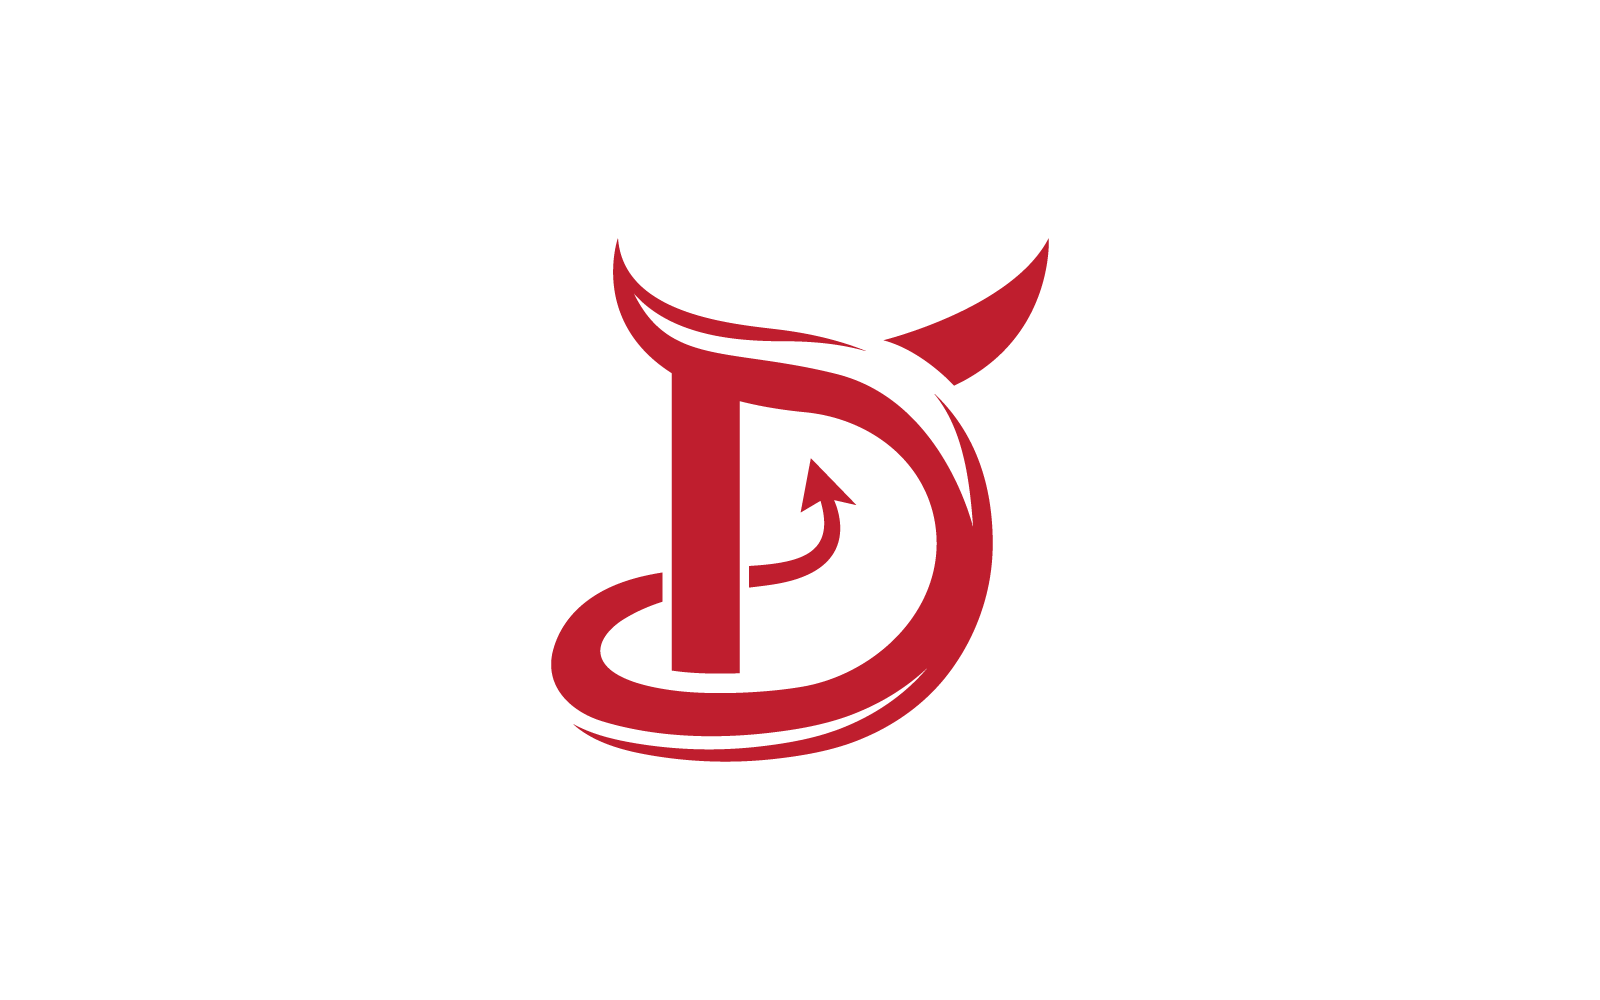 D kezdeti ördög logó illusztráció vektor sablon